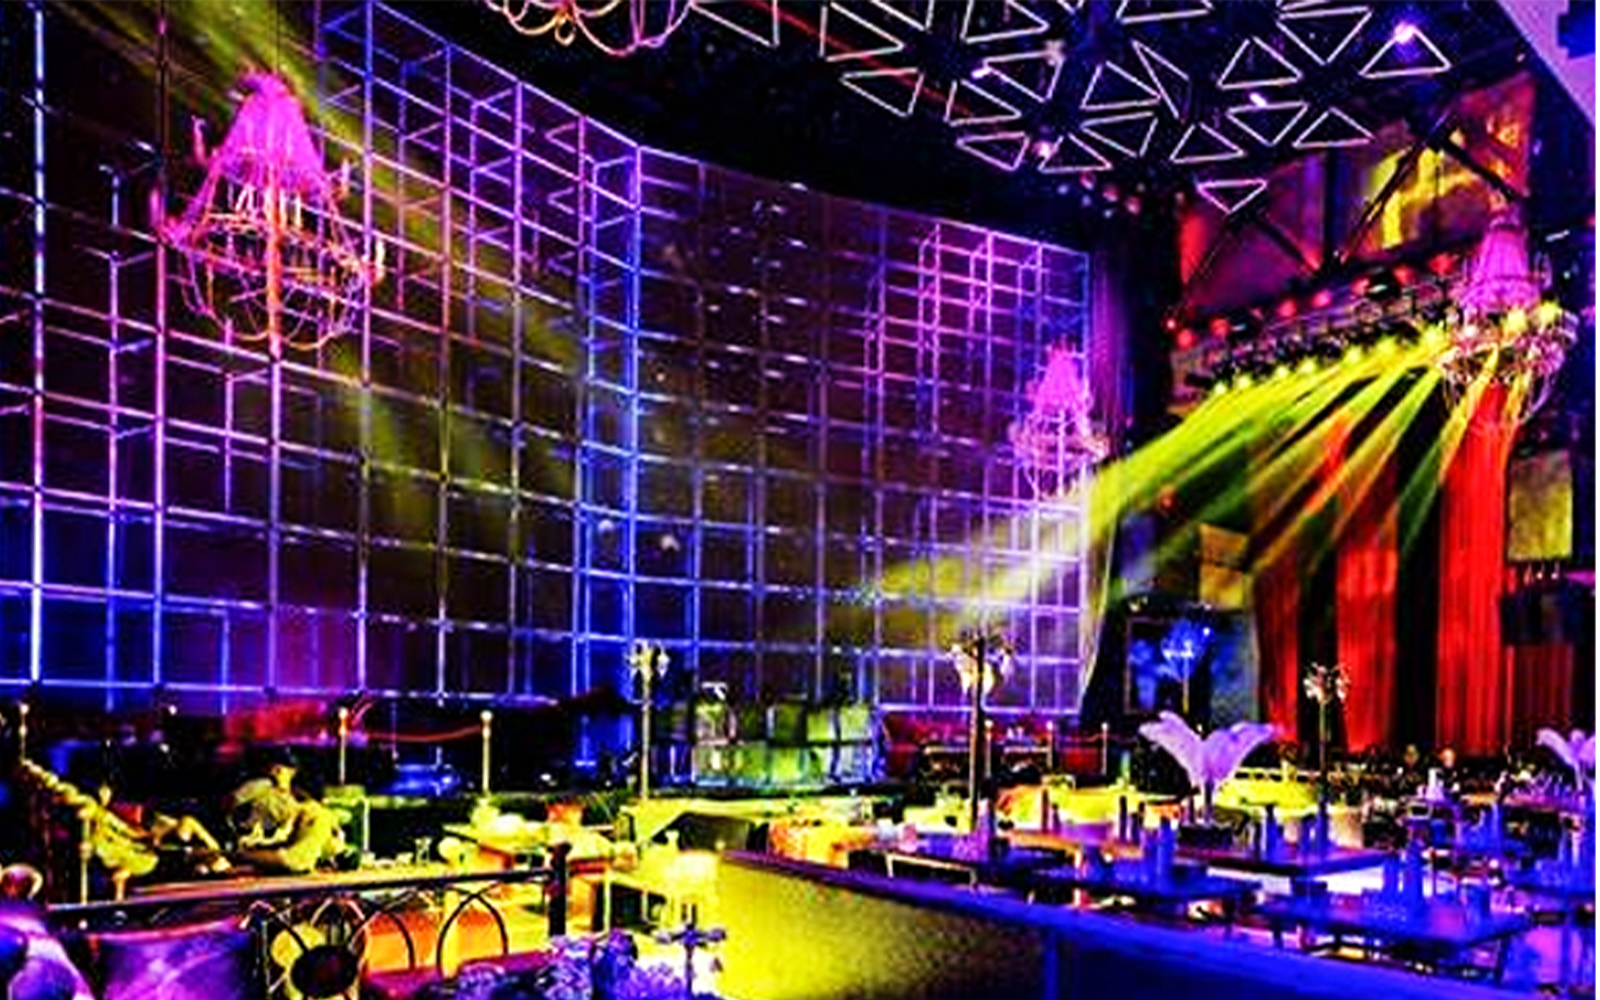 北京 Elements酒吧-酒吧设计_KTV设计_会所设计_音乐餐厅设计_文化商业地产设计_新冶组设计